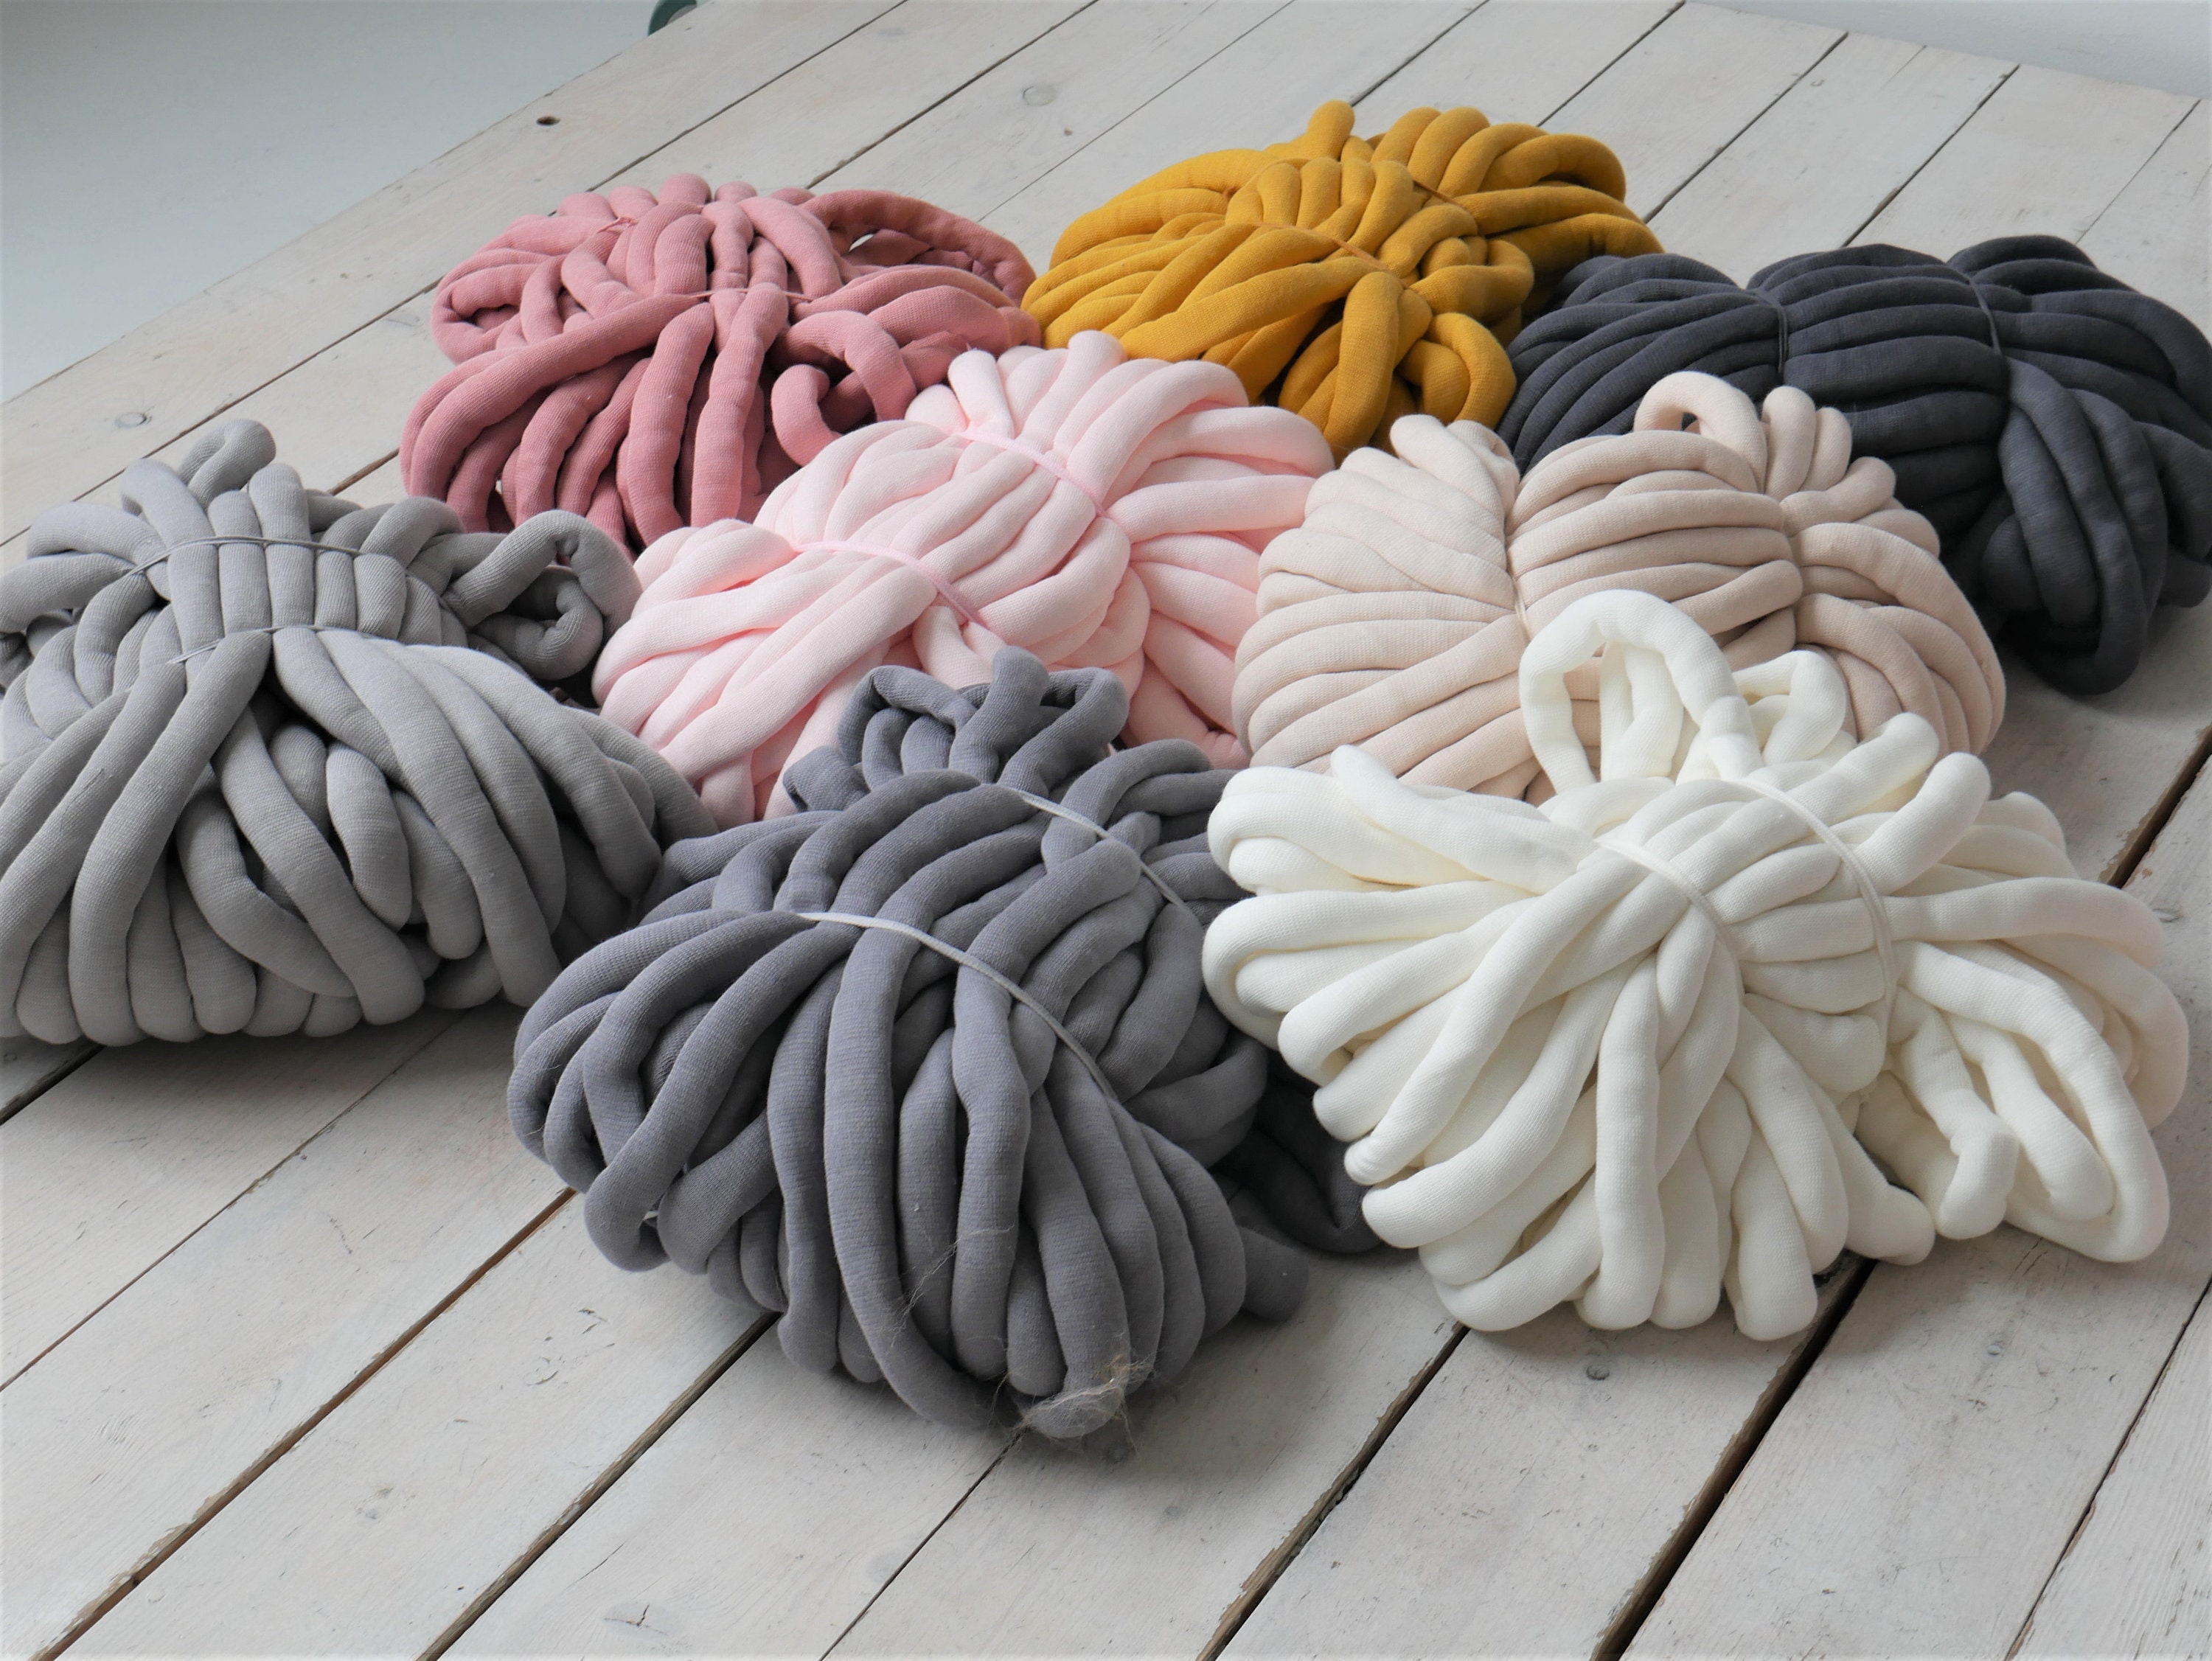  Badiman Chunky Yarn Bulky Yarn Hand Knit Length 21.9